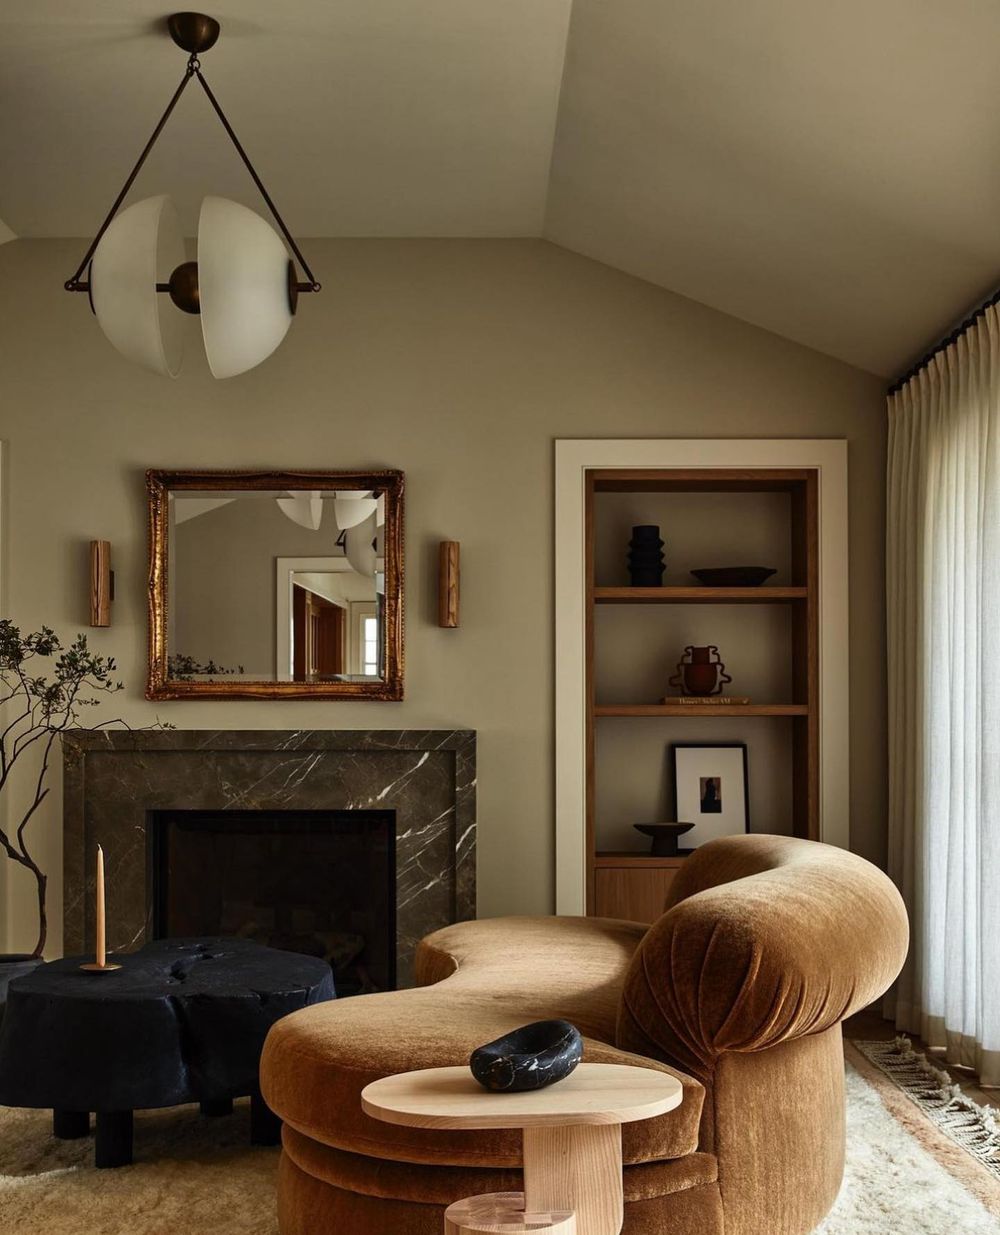 Dark and moody living room design ideas velvet furniture @lauren_nelson_design